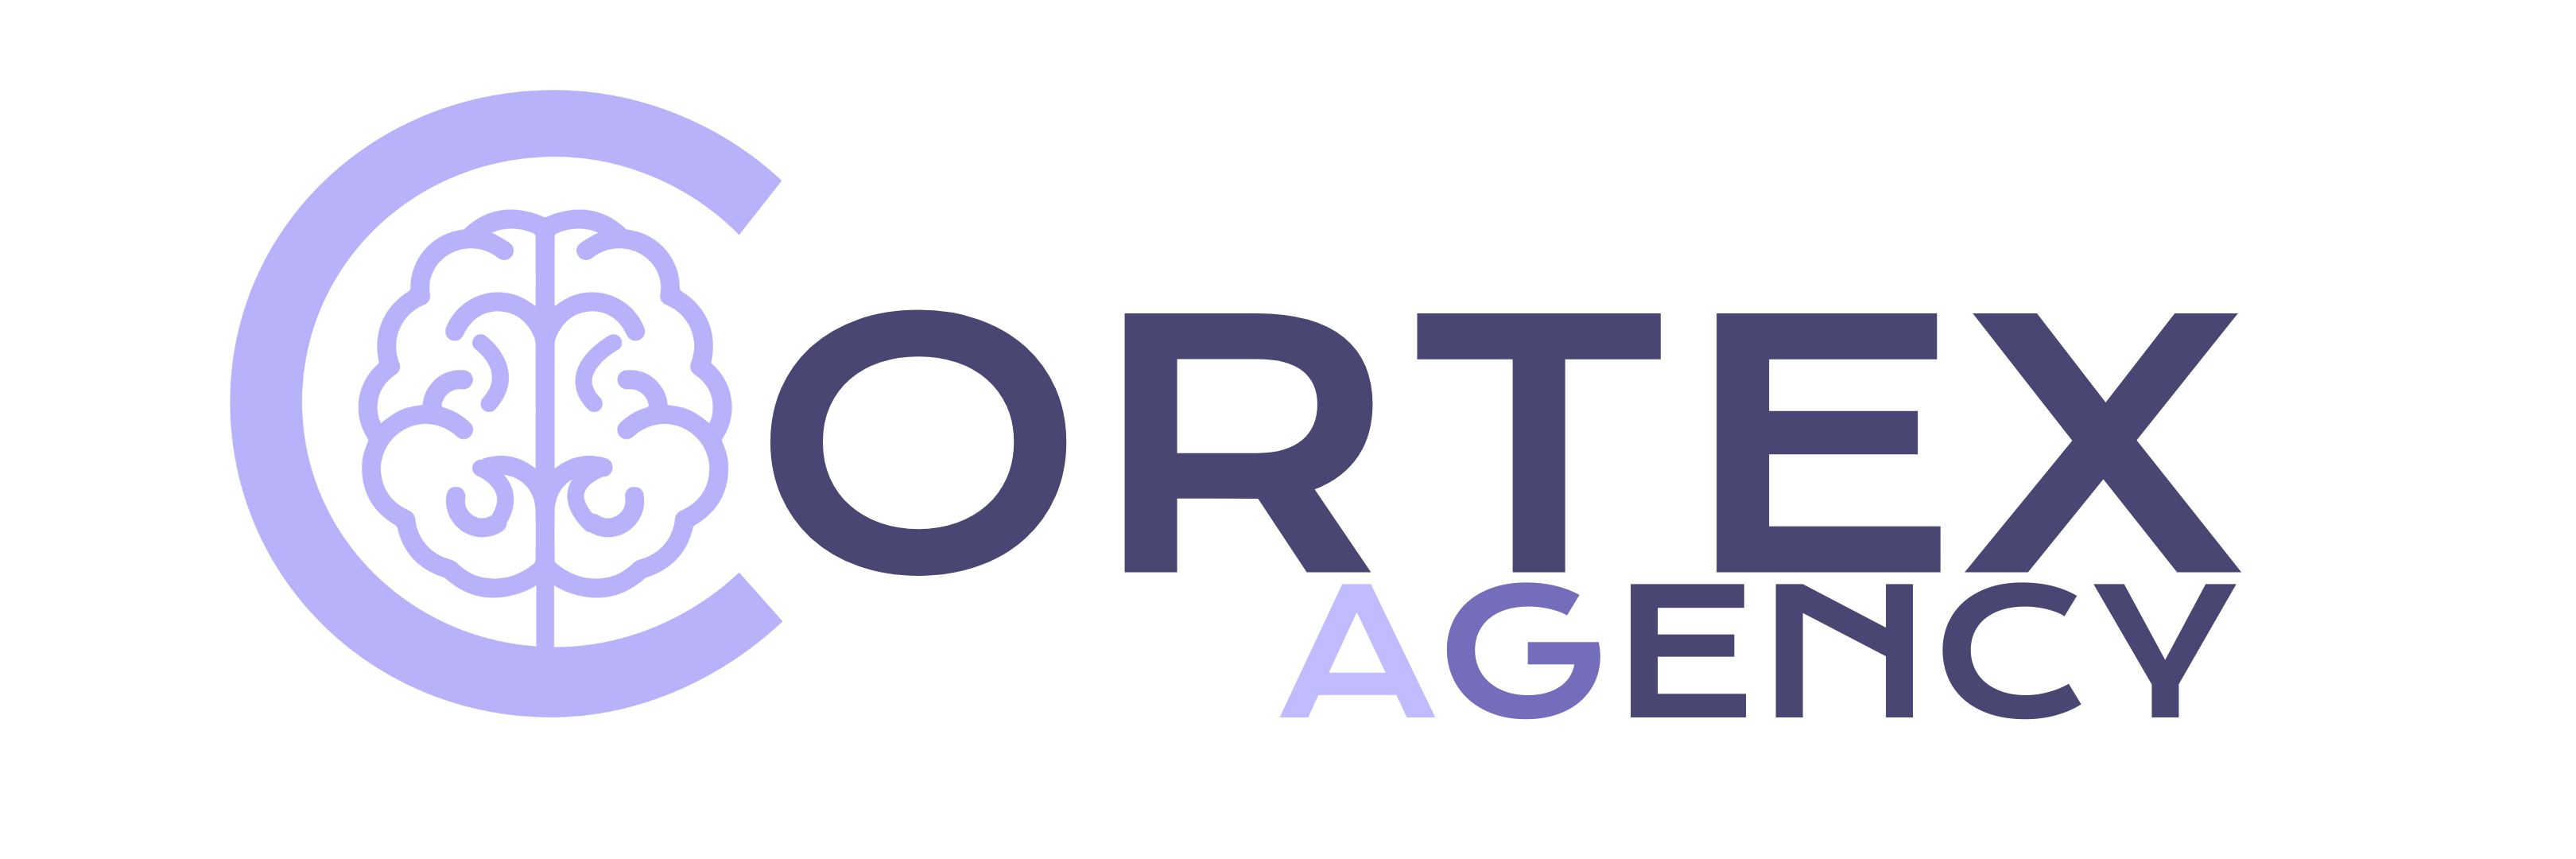 logo cortex agency